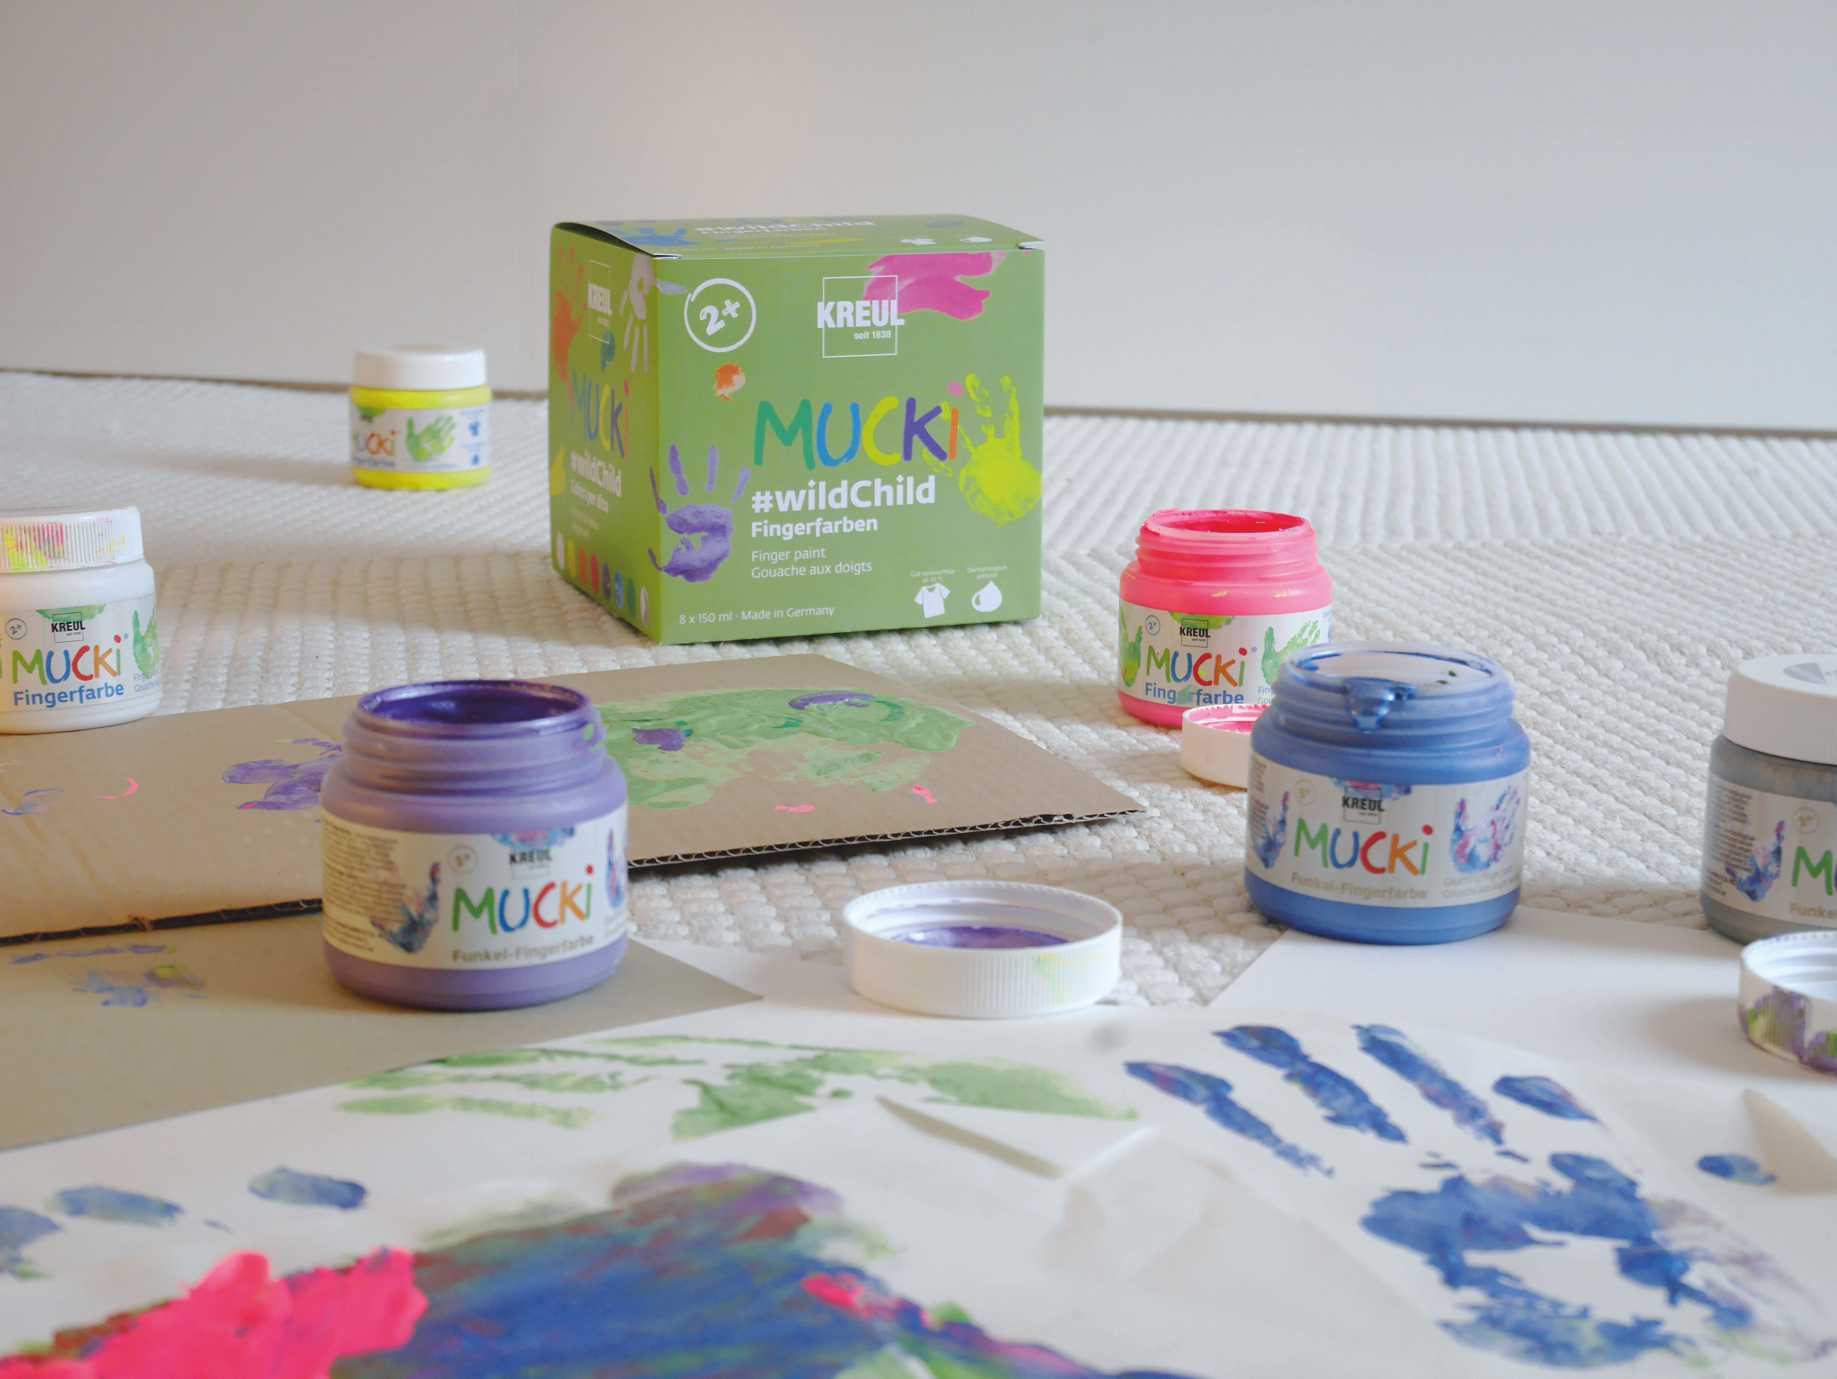 MUCKI Fingerfarbe Set Wildchild Neon Funkel Komplett Kleinkinder Kindergarten malen